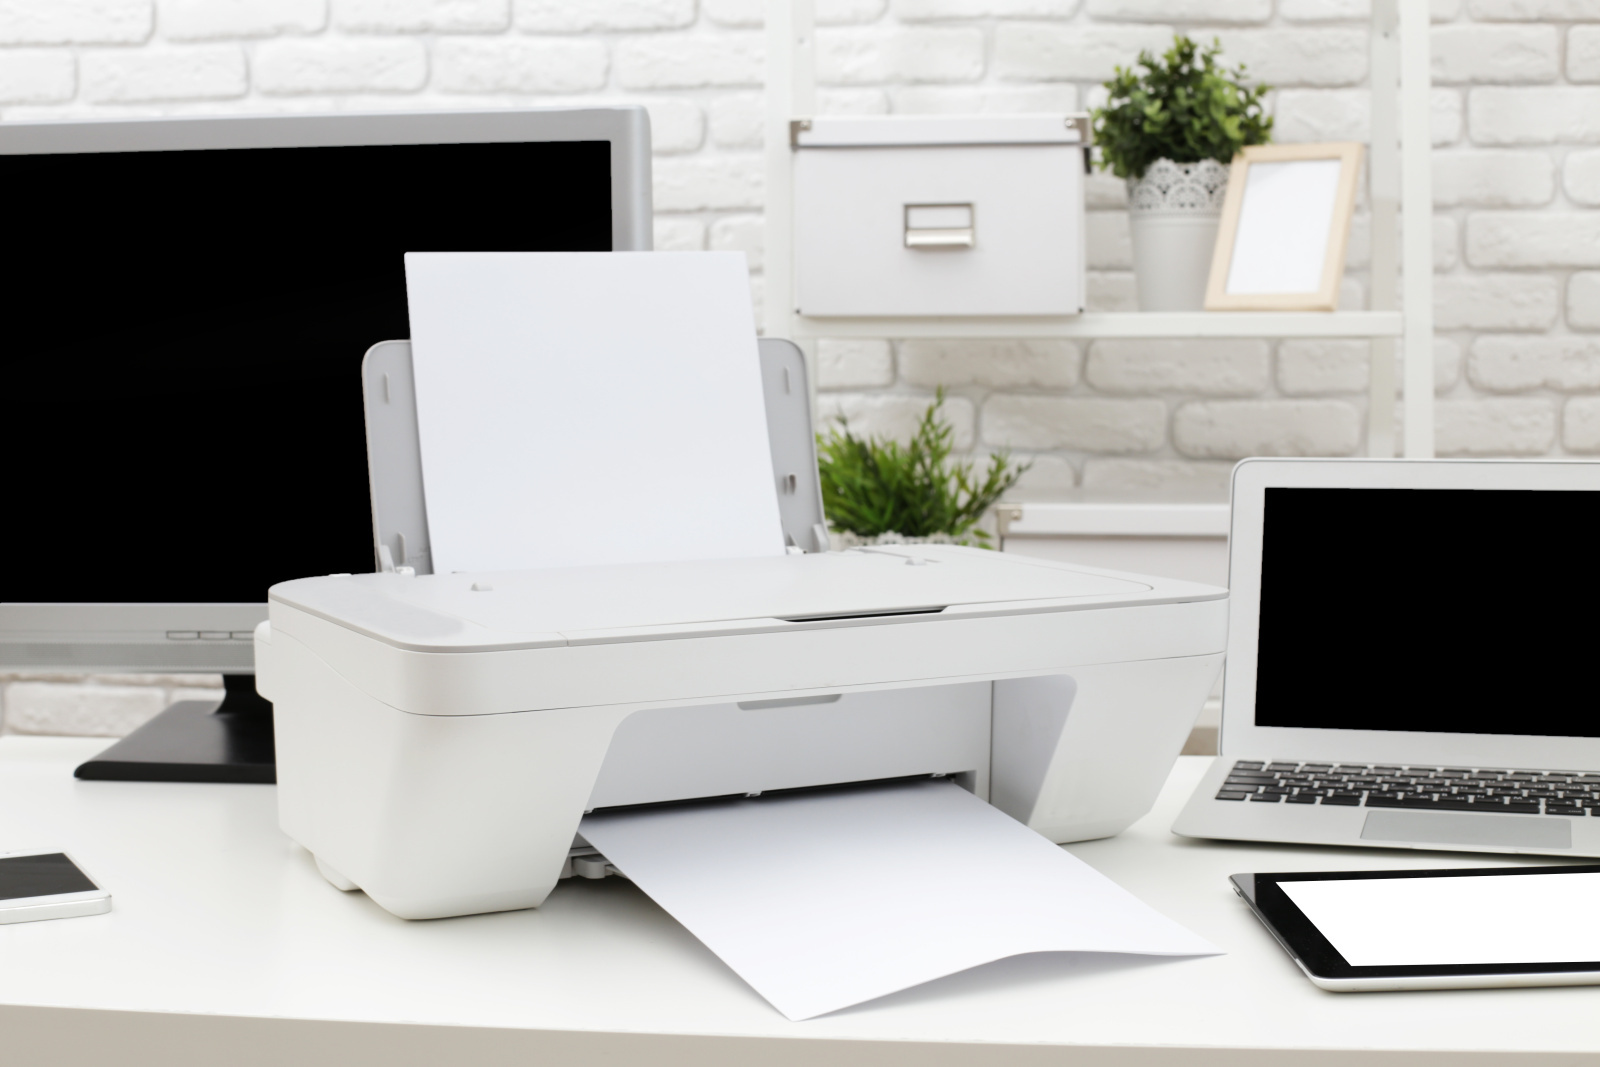 Tiskárna s xeroxovým papírem vedle notebooku.